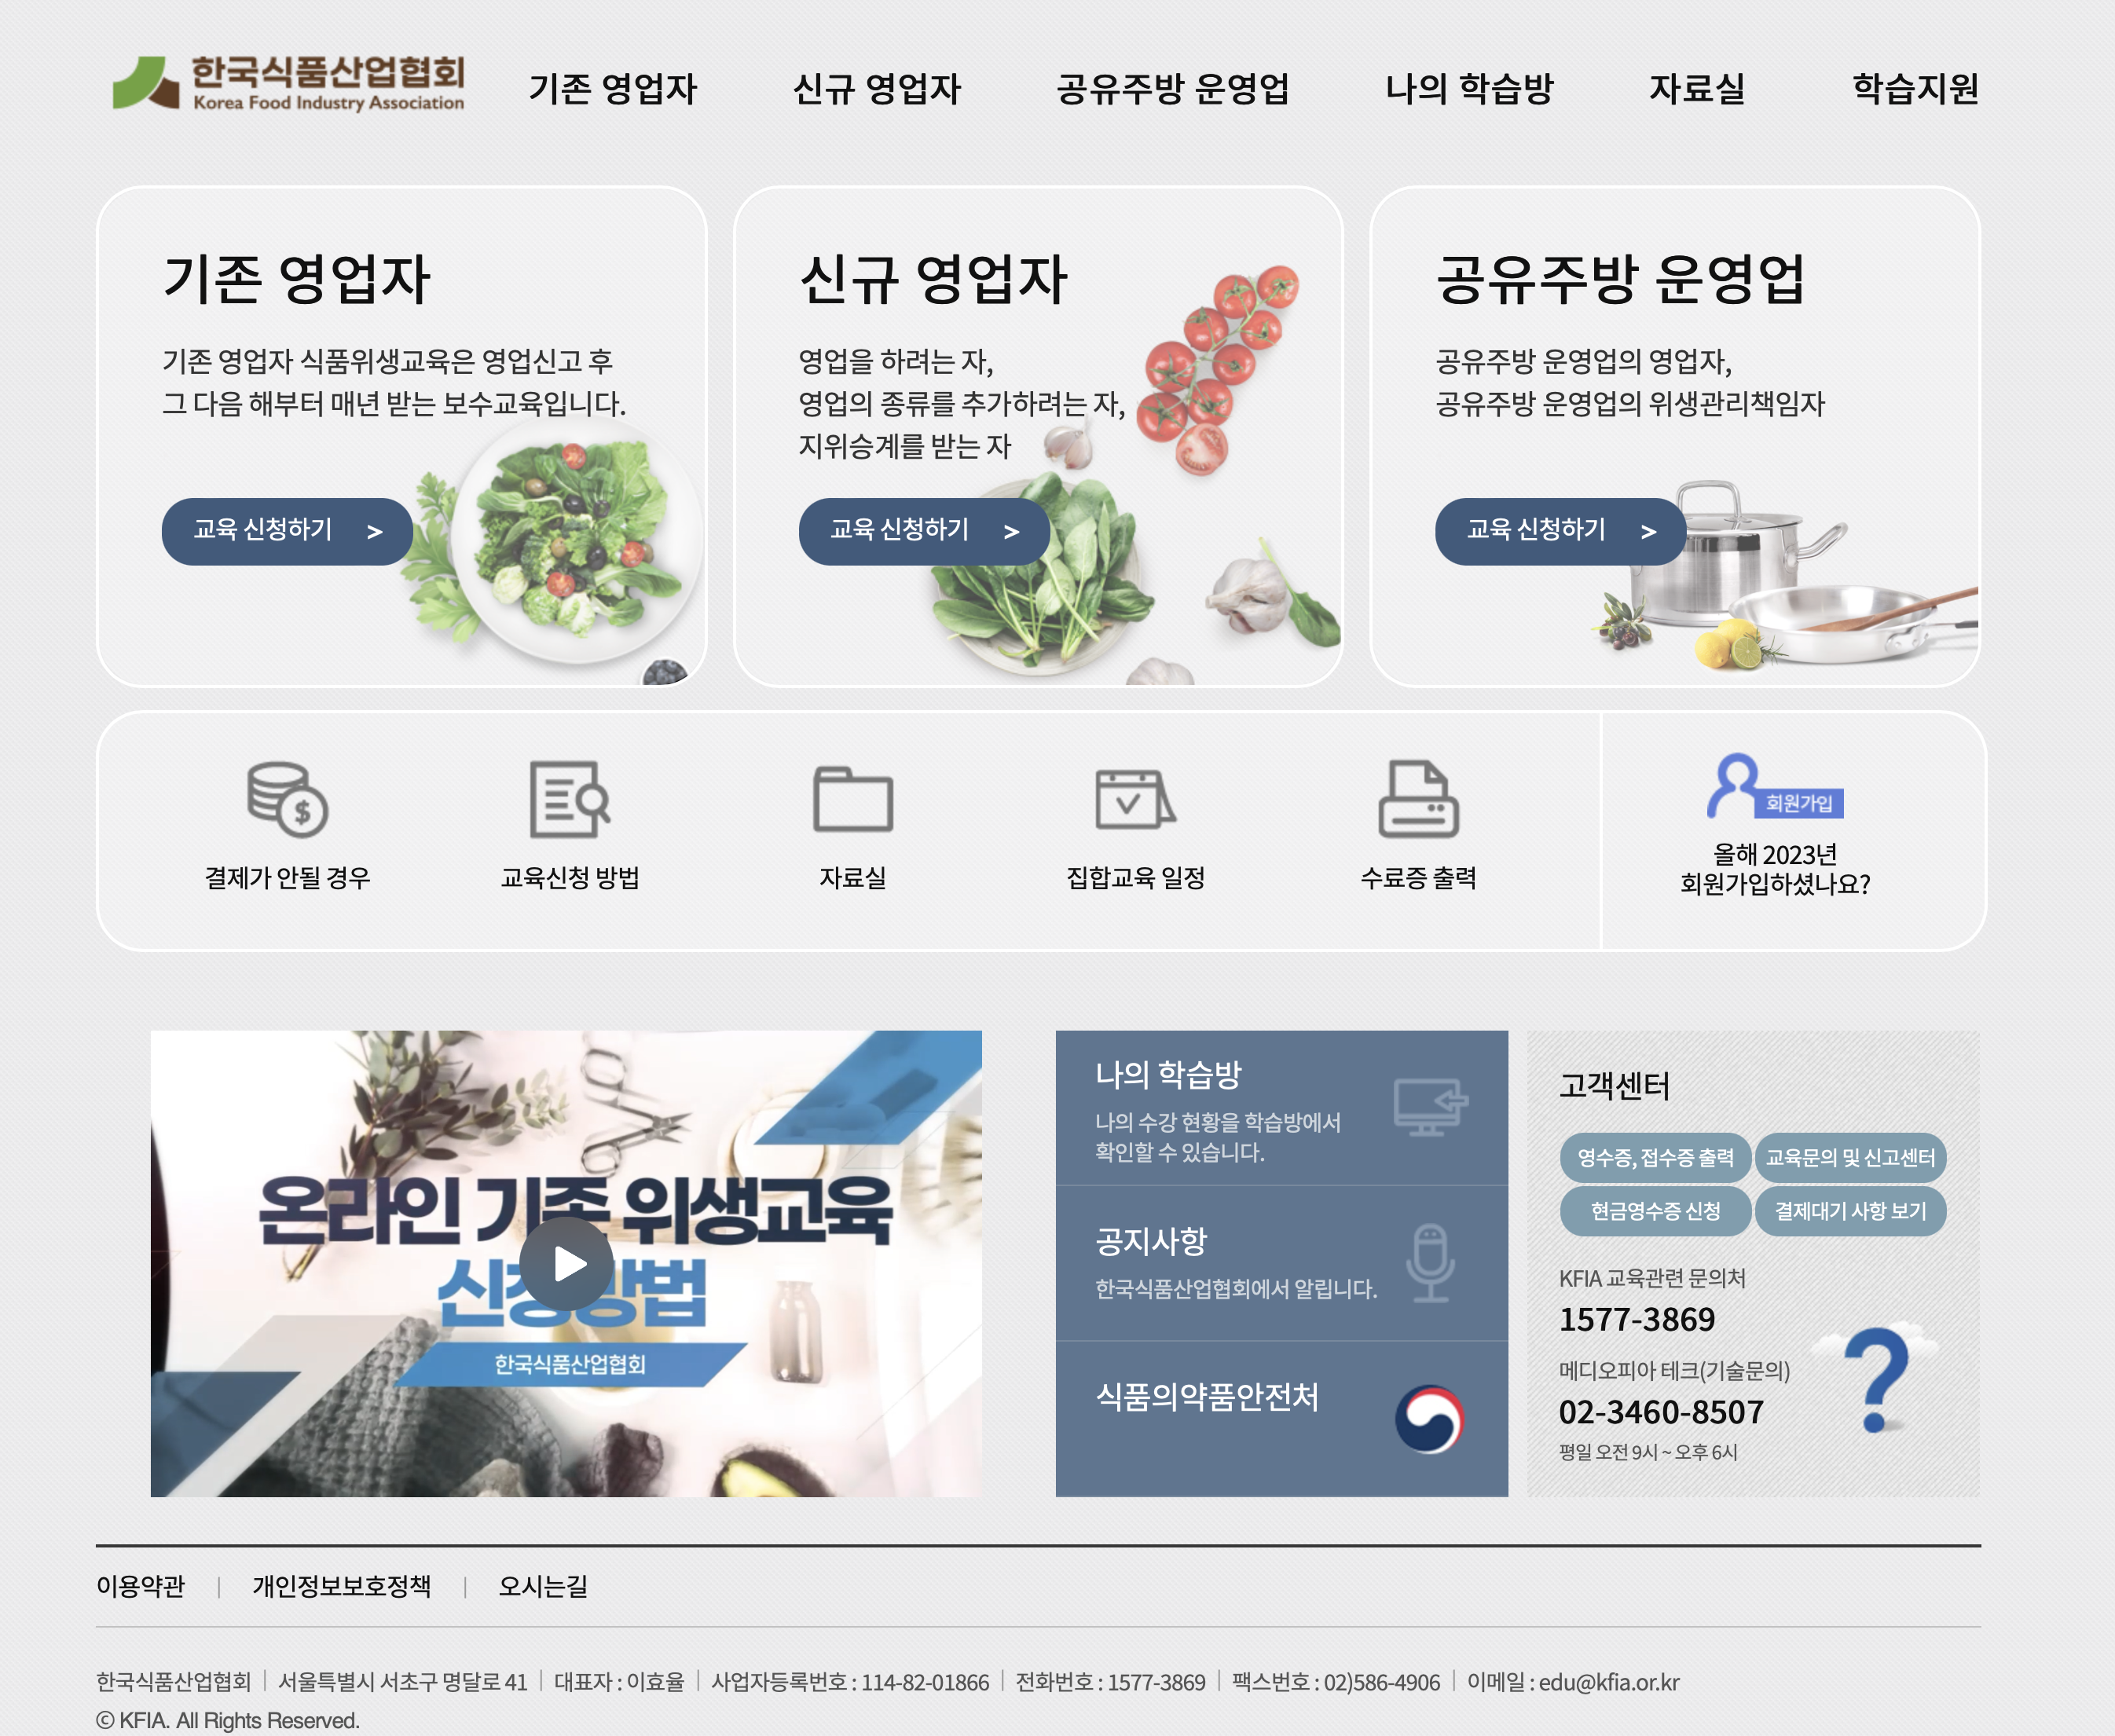 한국식품산업협회 위생교육 (www.kfia21.or.kr)